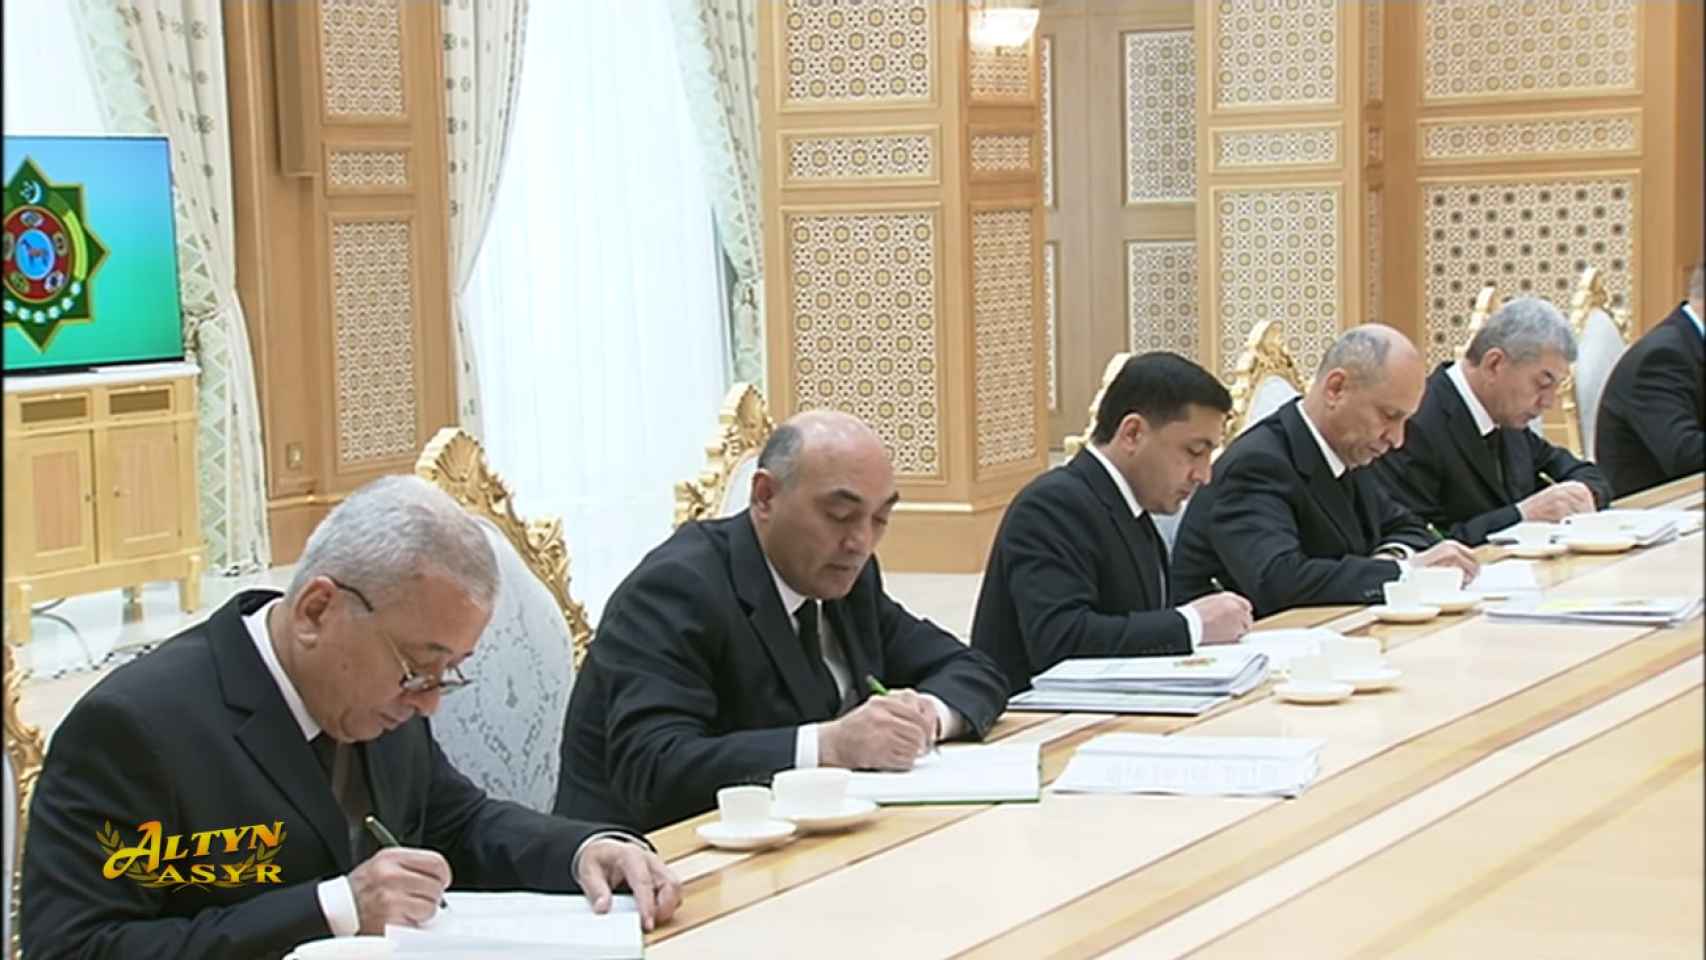 Altos funcionarios turkmenos tomando nota de las palabras del exdictador Gurbanguly Berdimuhamedow